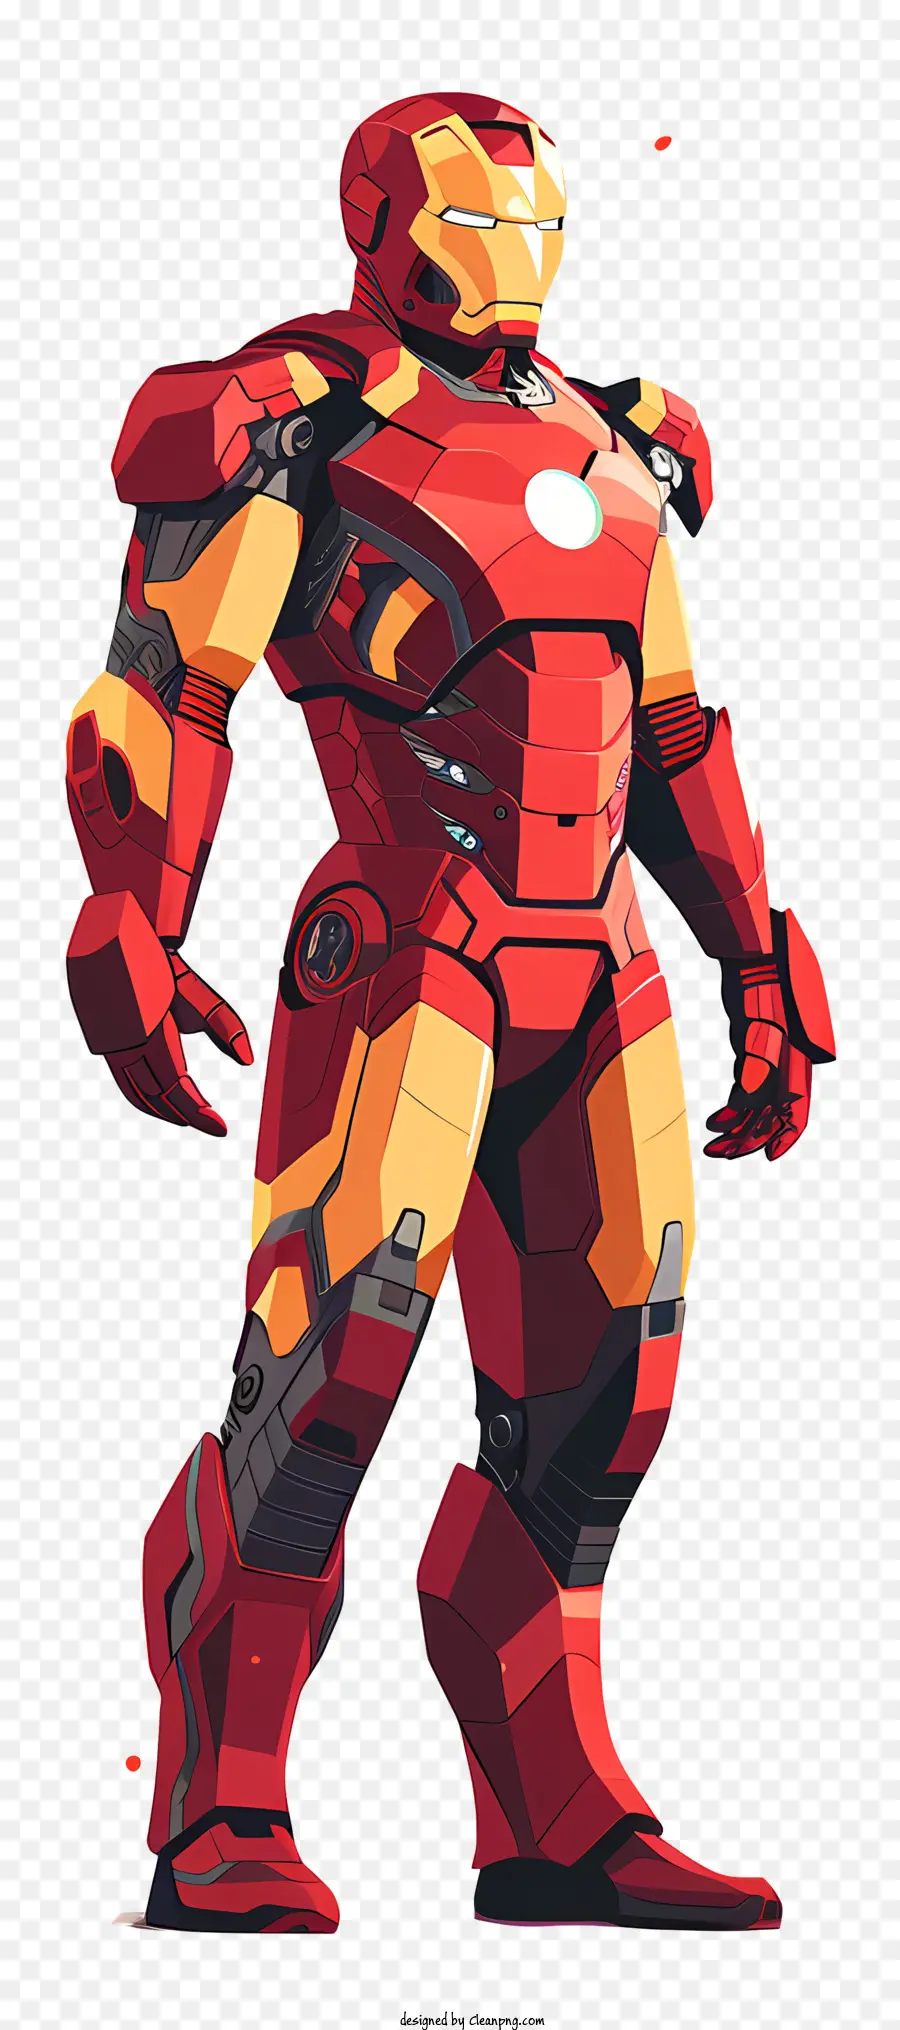 người Sắt - Iron Man, một siêu anh hùng với áo giáp màu đỏ/vàng